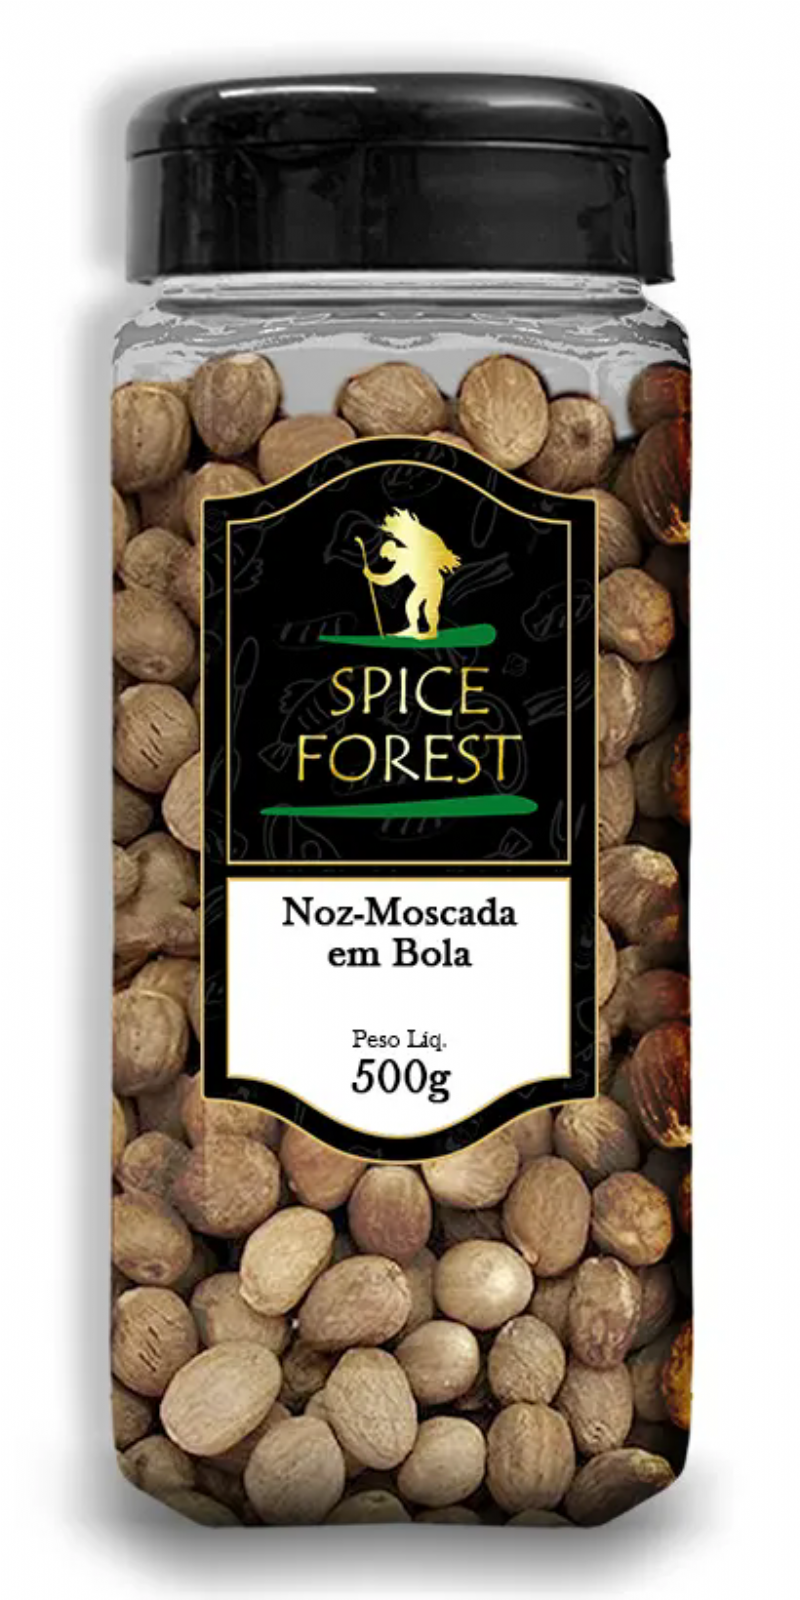 Noz-Moscada em Bola 500g - Spice Forest